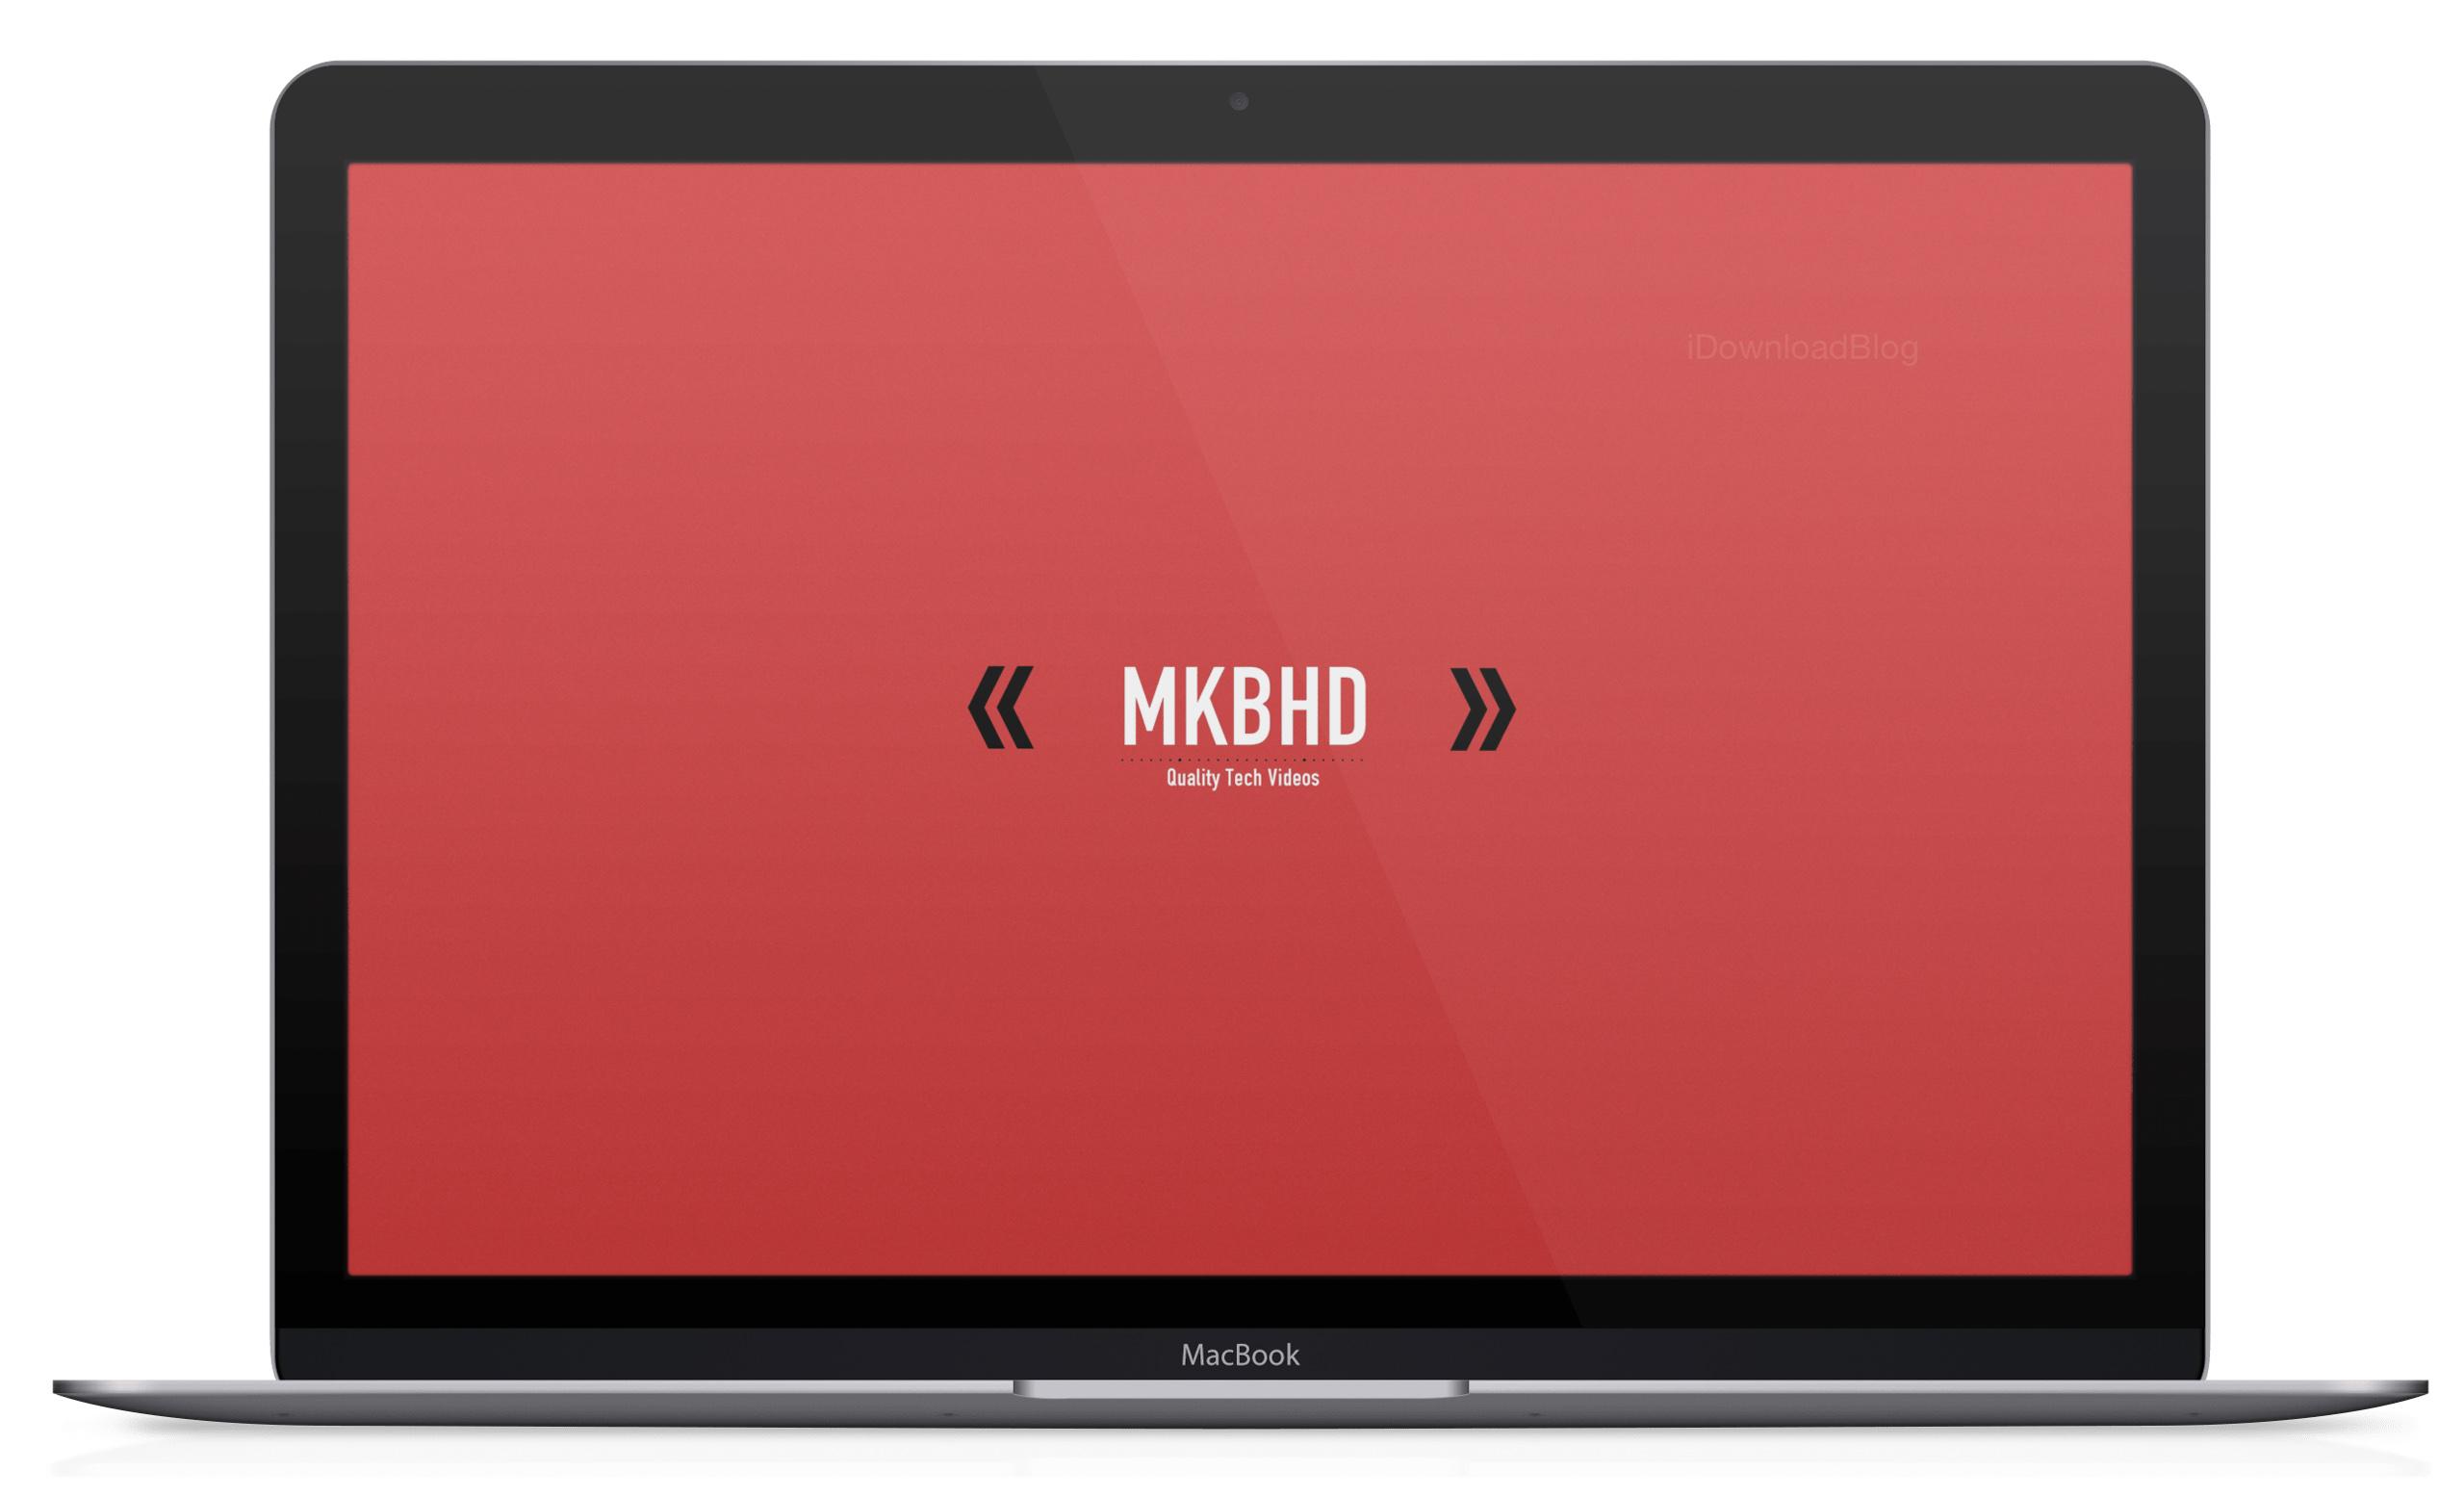 Mời tải về bộ hình nền xịn của MKBHD dành cho iPhone, iPad & desktop